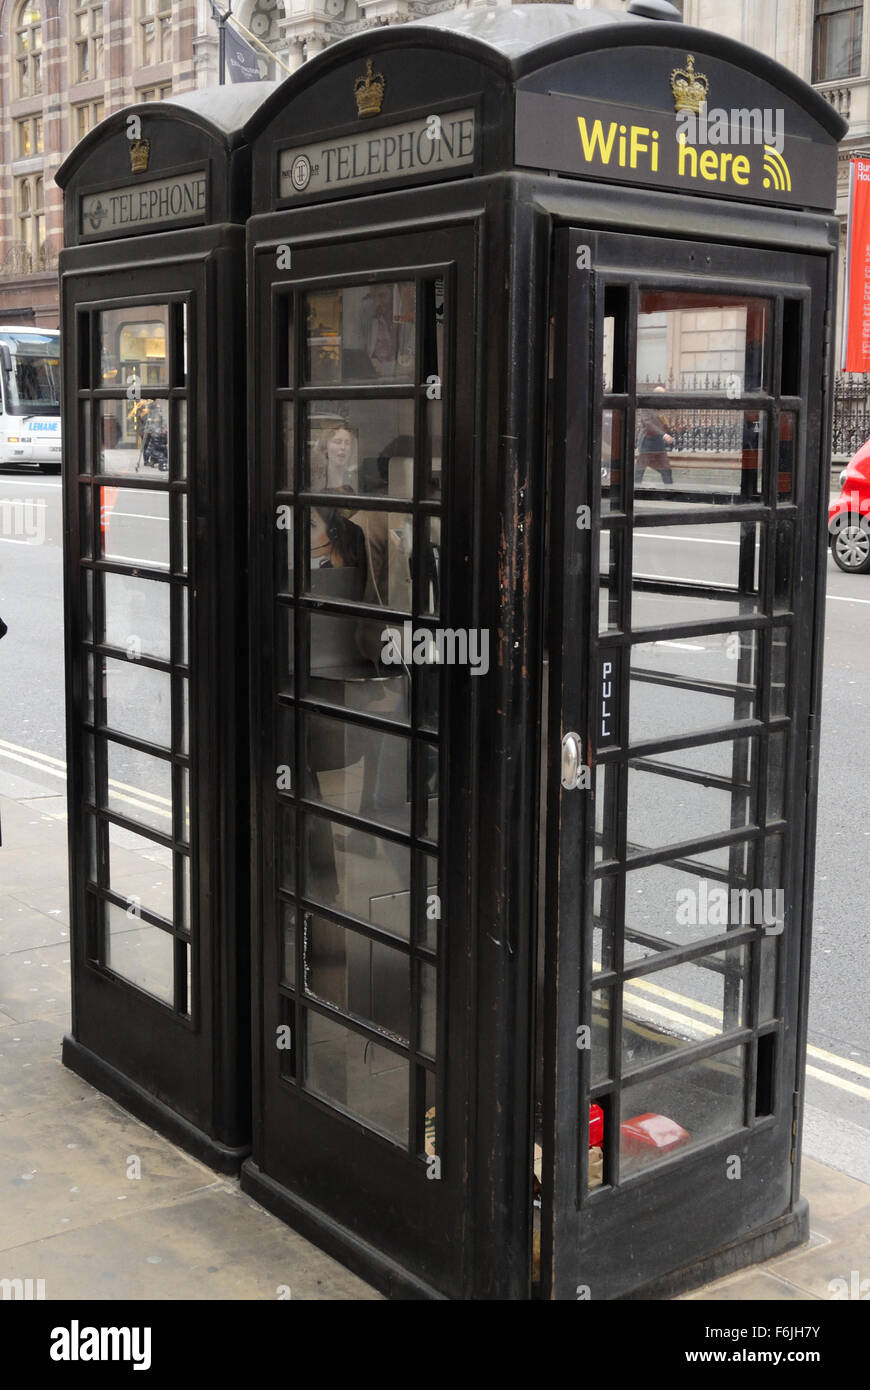 Une connexion Wi-Fi gratuite offrant des boîtes de téléphone noir - Piccadilly, Londres, Angleterre, Royaume-Uni - 2015 Banque D'Images